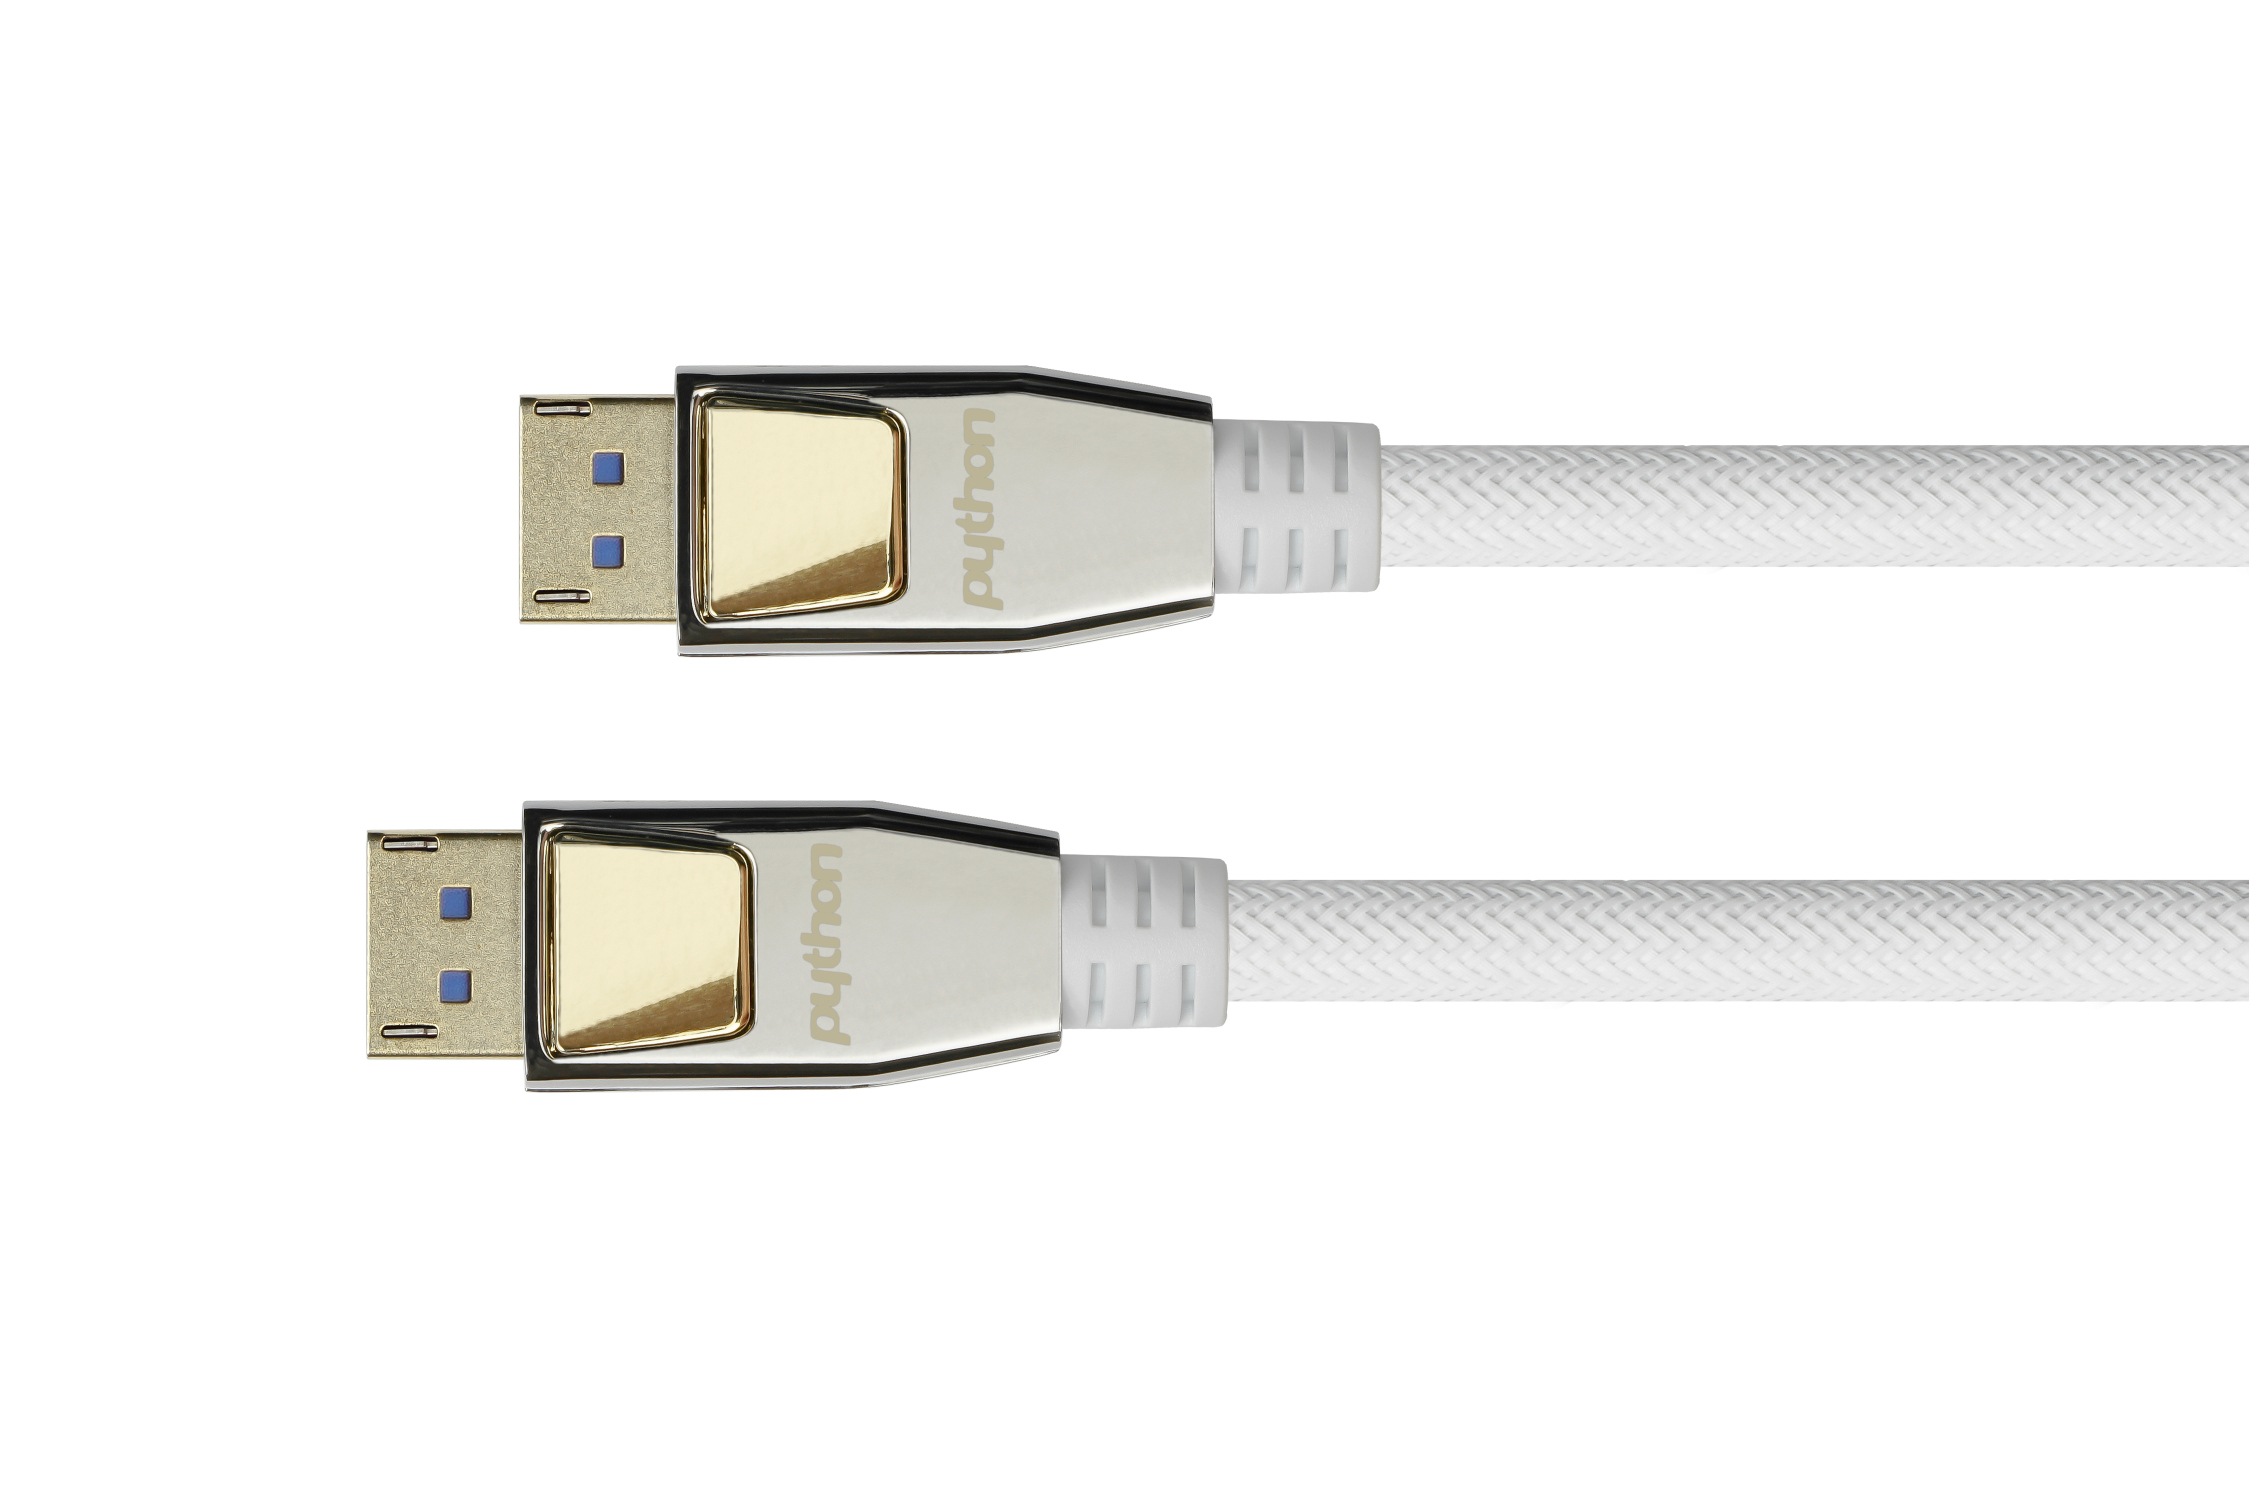 PREMIUM DisplayPort 2.0 Kabel, 54 Gbit/s, UHBR 13.5, 4K@240Hz / 8K@60Hz, Nylongeflecht weiß, 3m